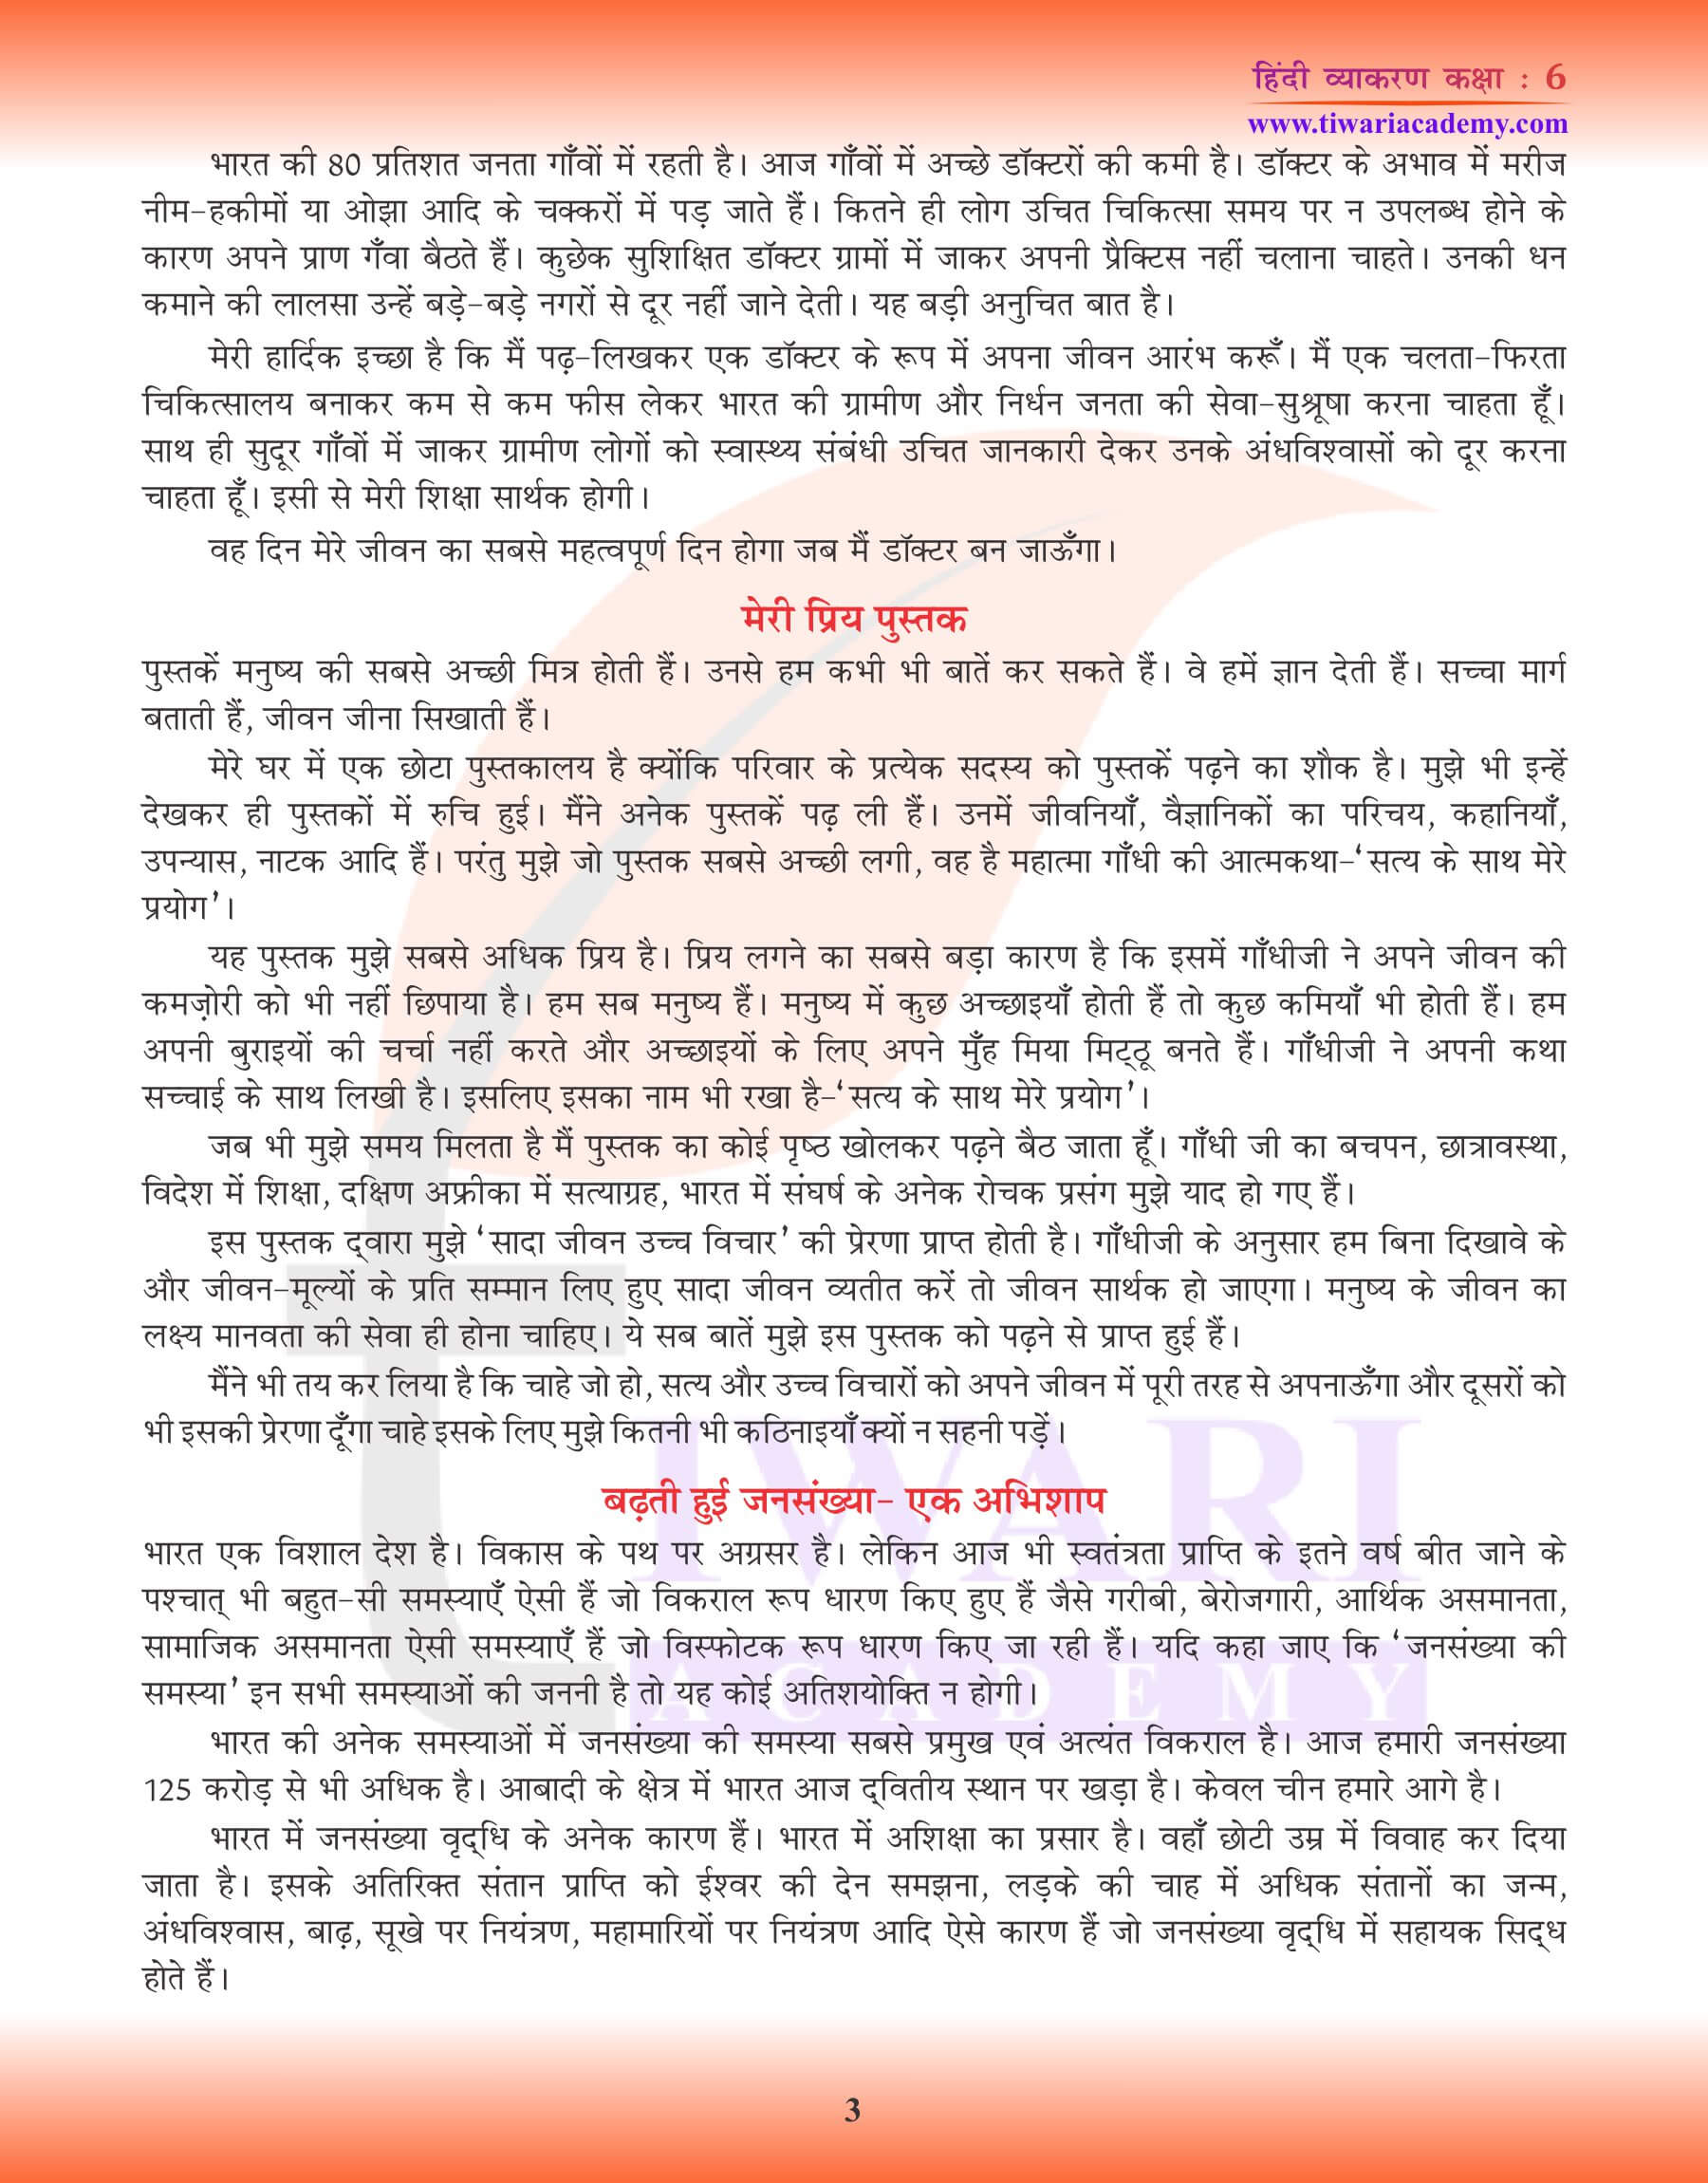 कक्षा 6 हिंदी व्याकरण निबंध के नमूने